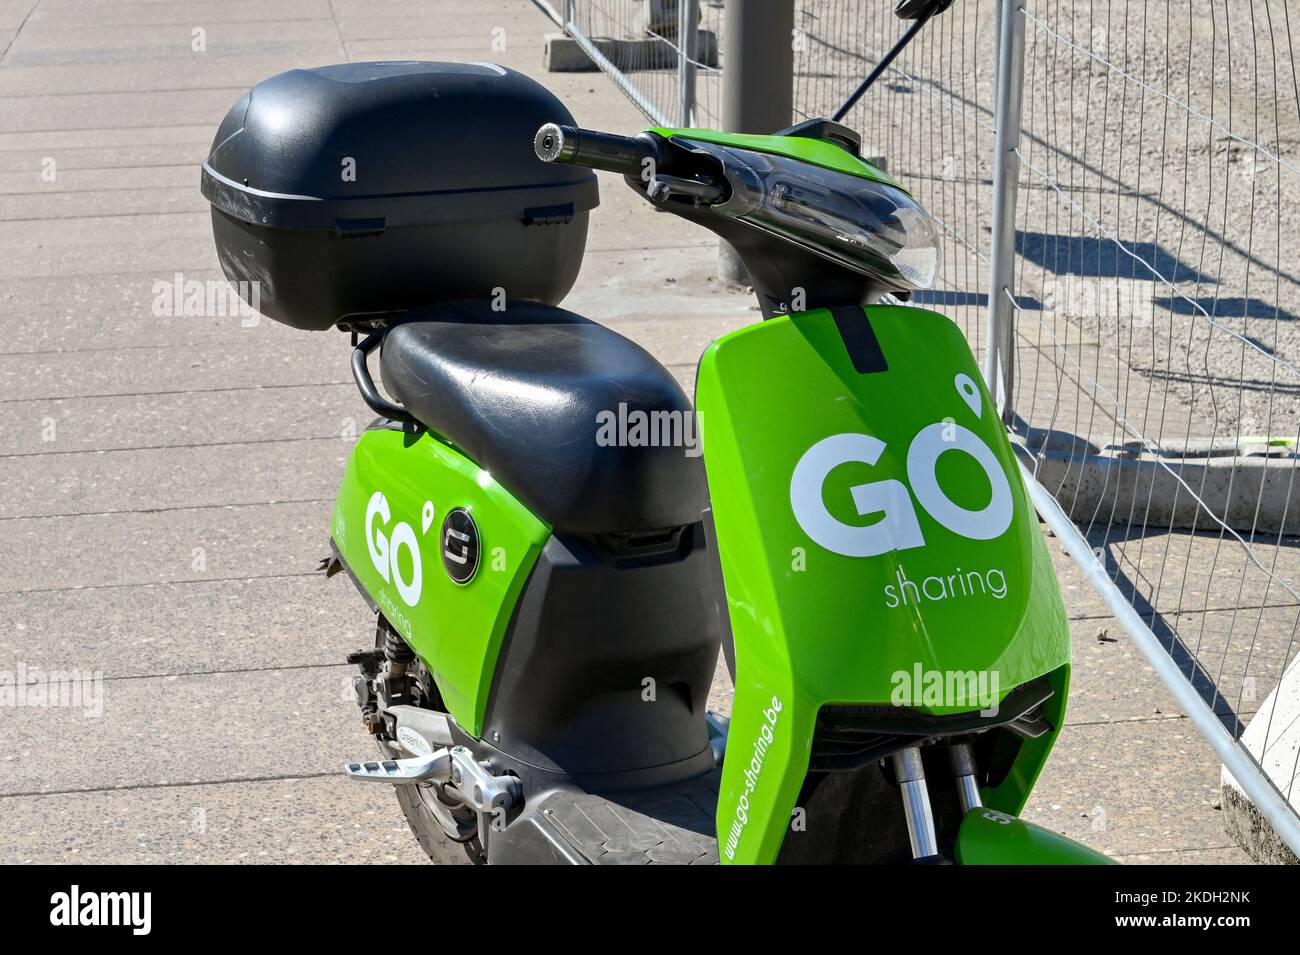 Amberes, Bélgica - Agosto 2022: Scooter abandonado en un pavimento cerca del centro de la ciudad, el vehículo forma parte de un sistema de alquiler de scooter Foto de stock